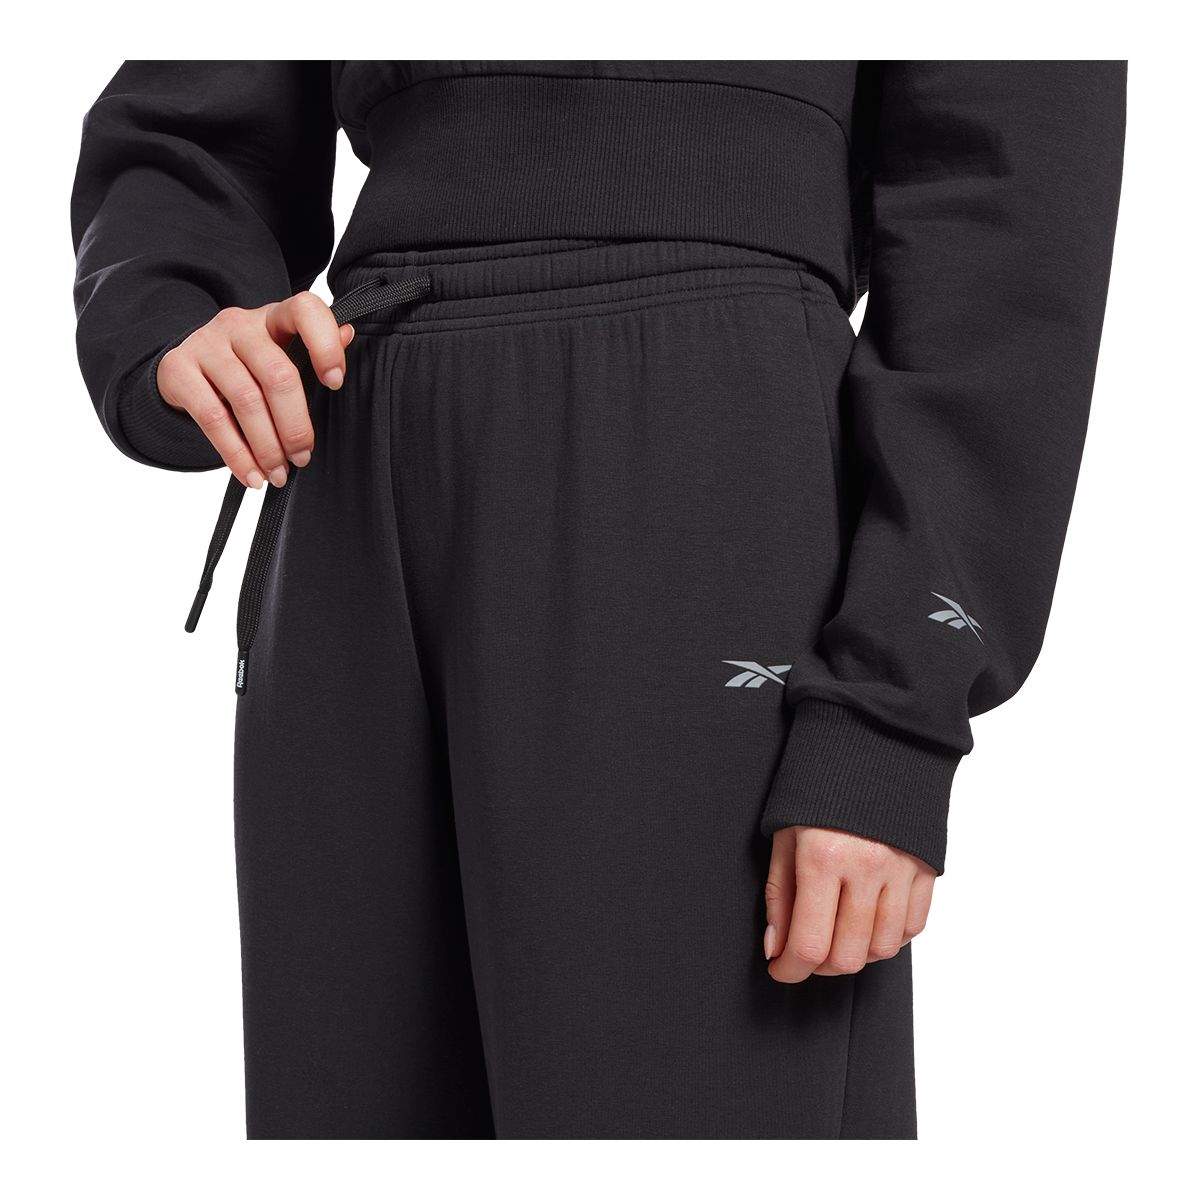  Reebok Women's Standard DreamBlend Cotton Pants, Black